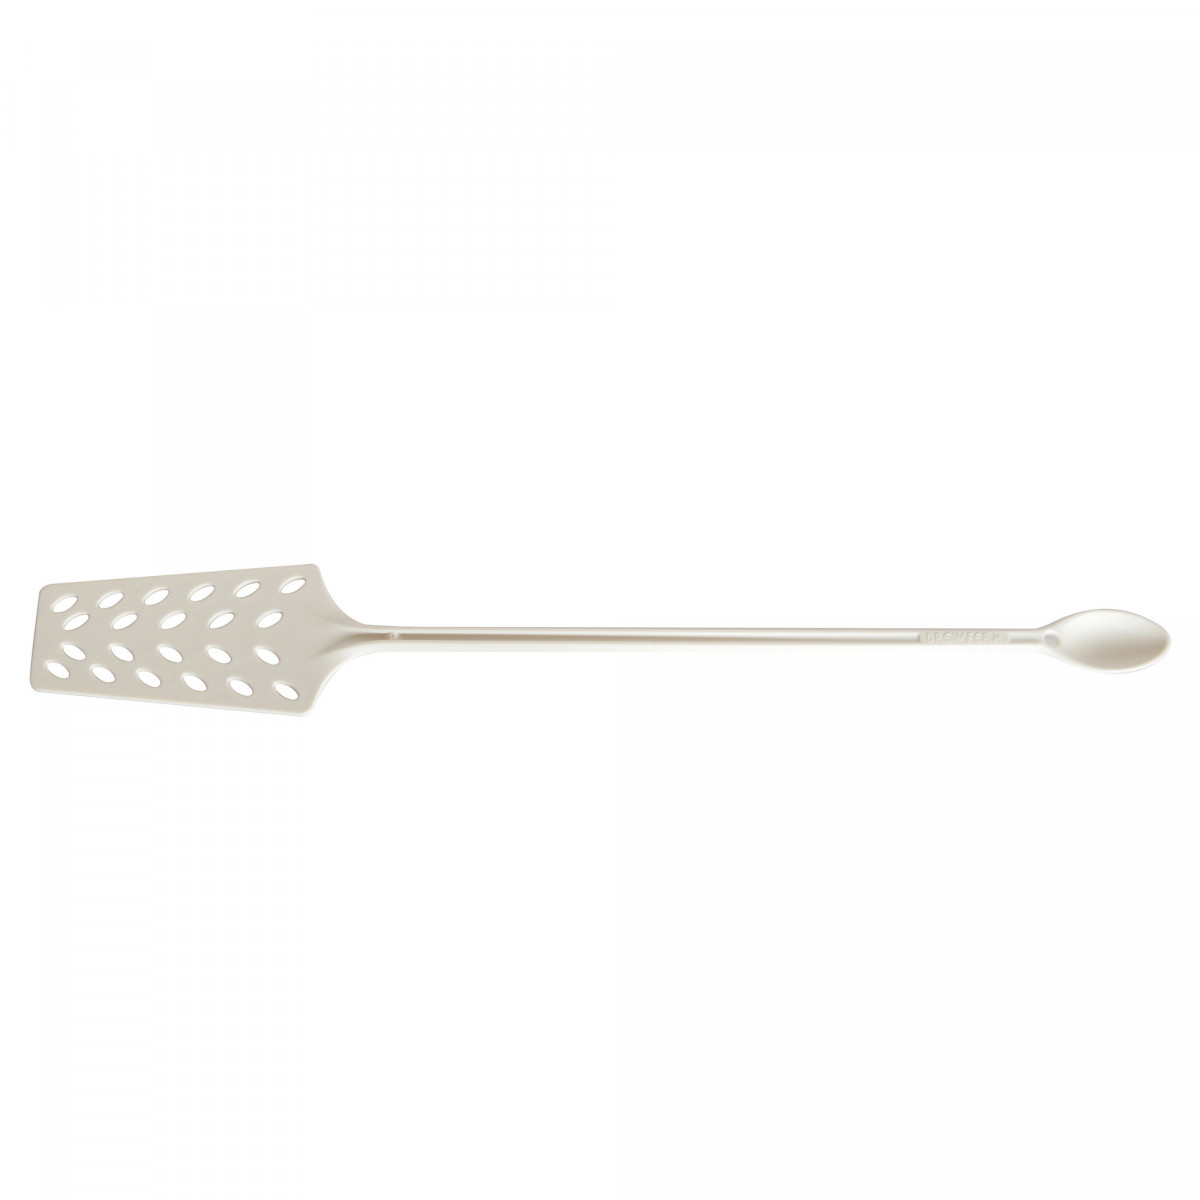 Brewferm spatule de brassage 45 cm